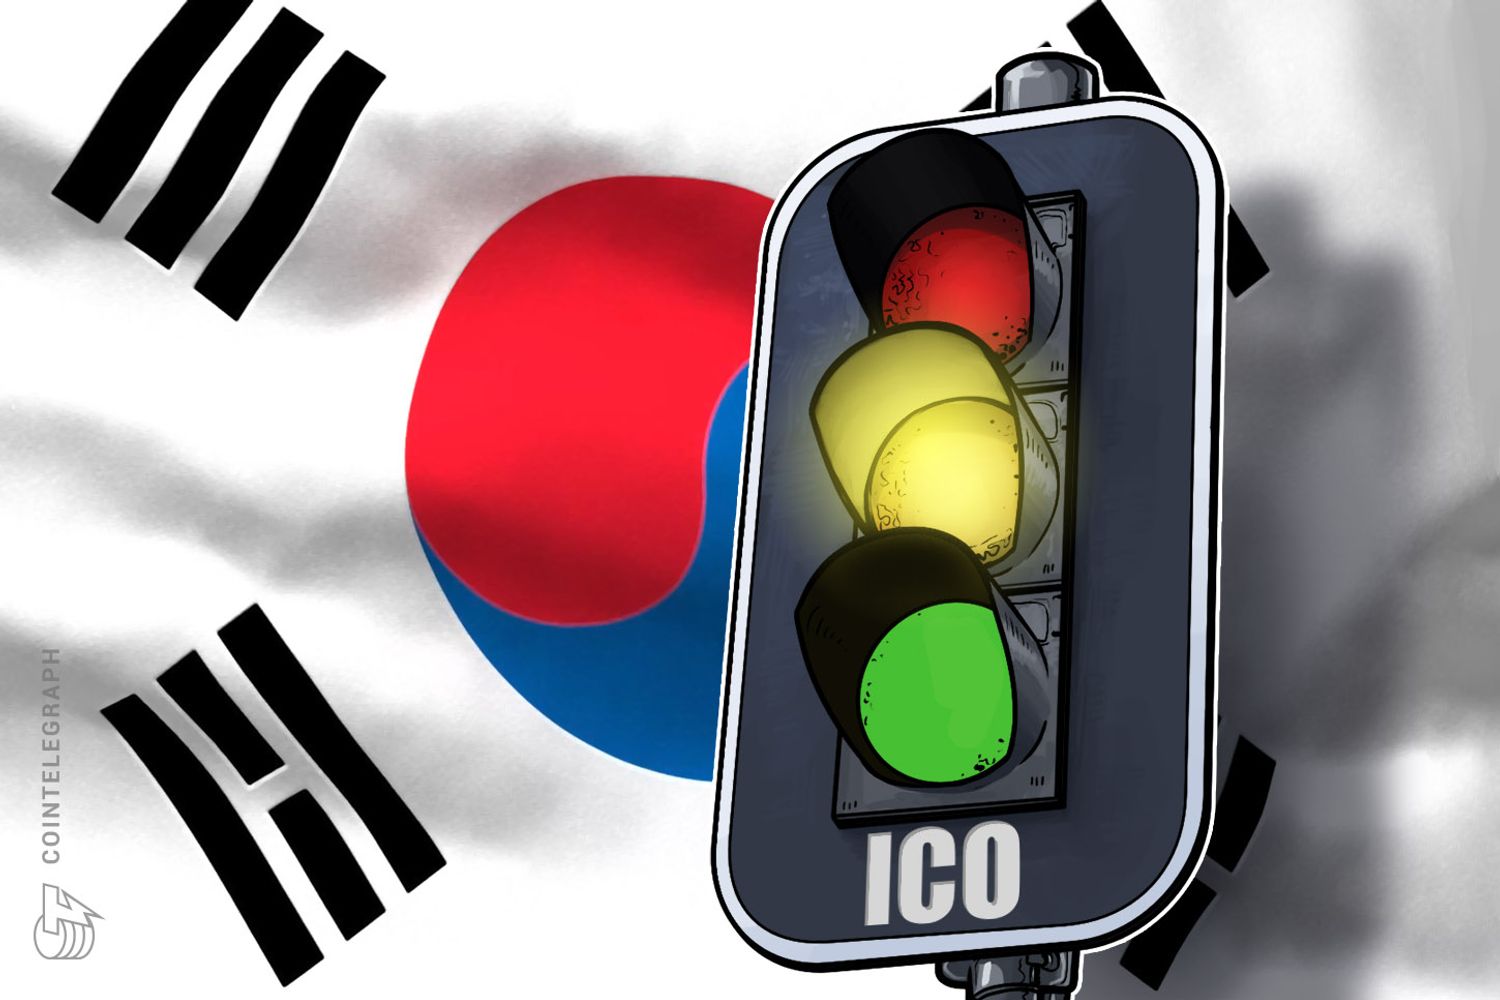 ViMoney: Hàn Quốc có thể lại cho phép ICO